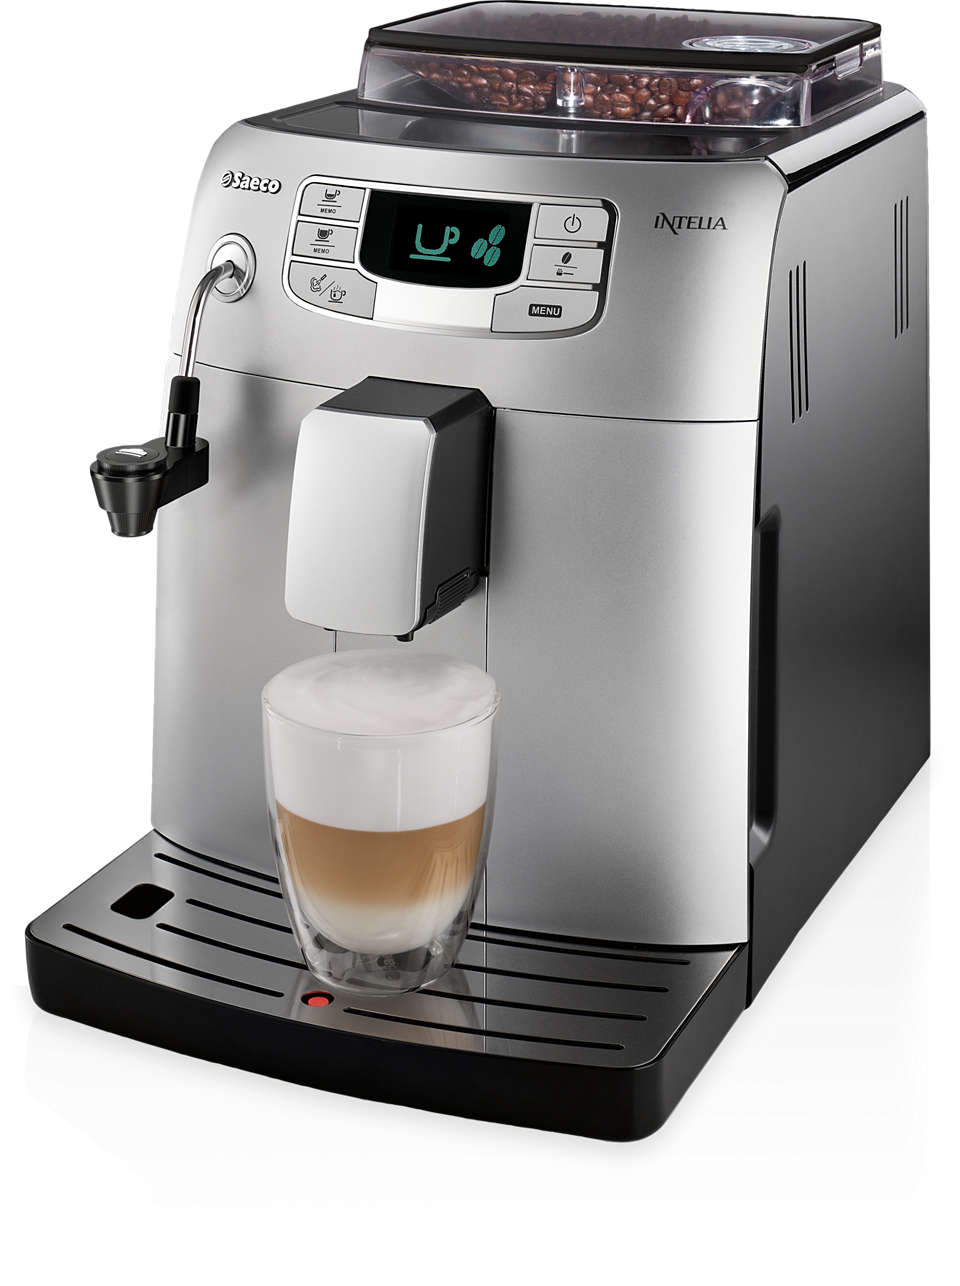 Espresso a káva stisknutím tlačítka